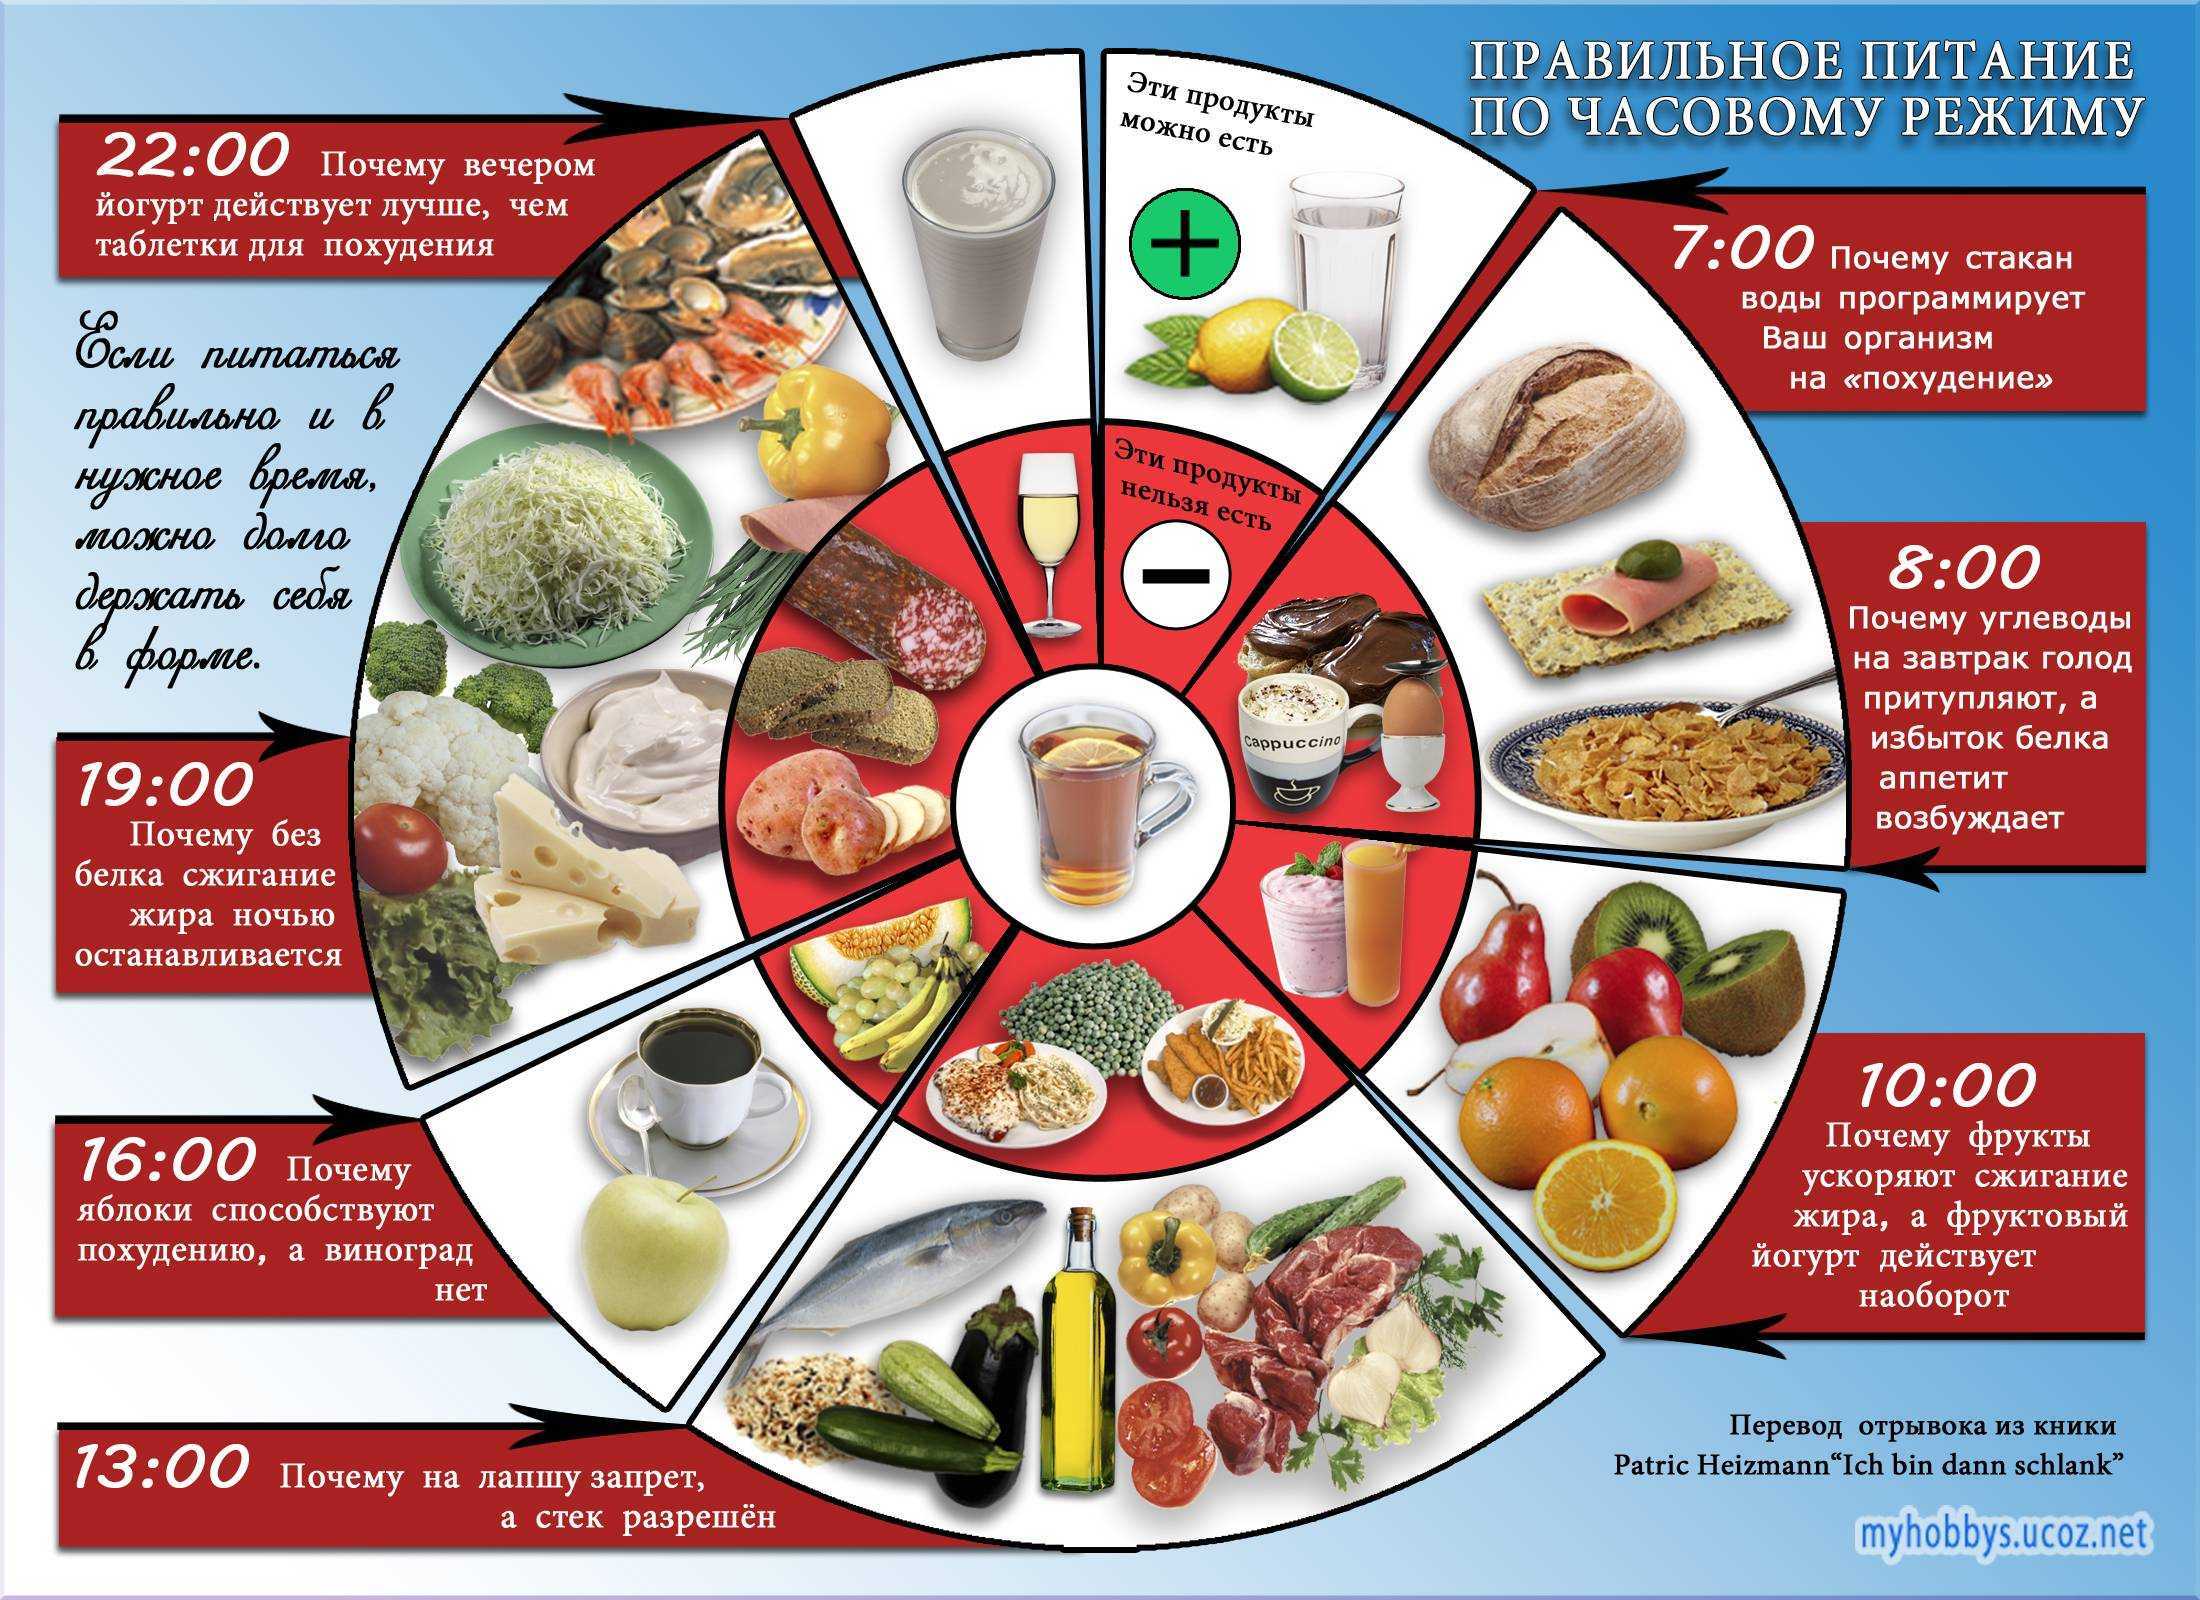 Принципы пятифакторной диеты Харли Пастернака Какие продукты разрешены Длительность курса похудения Меню на каждый день План ежедневных тренировок Отзывы